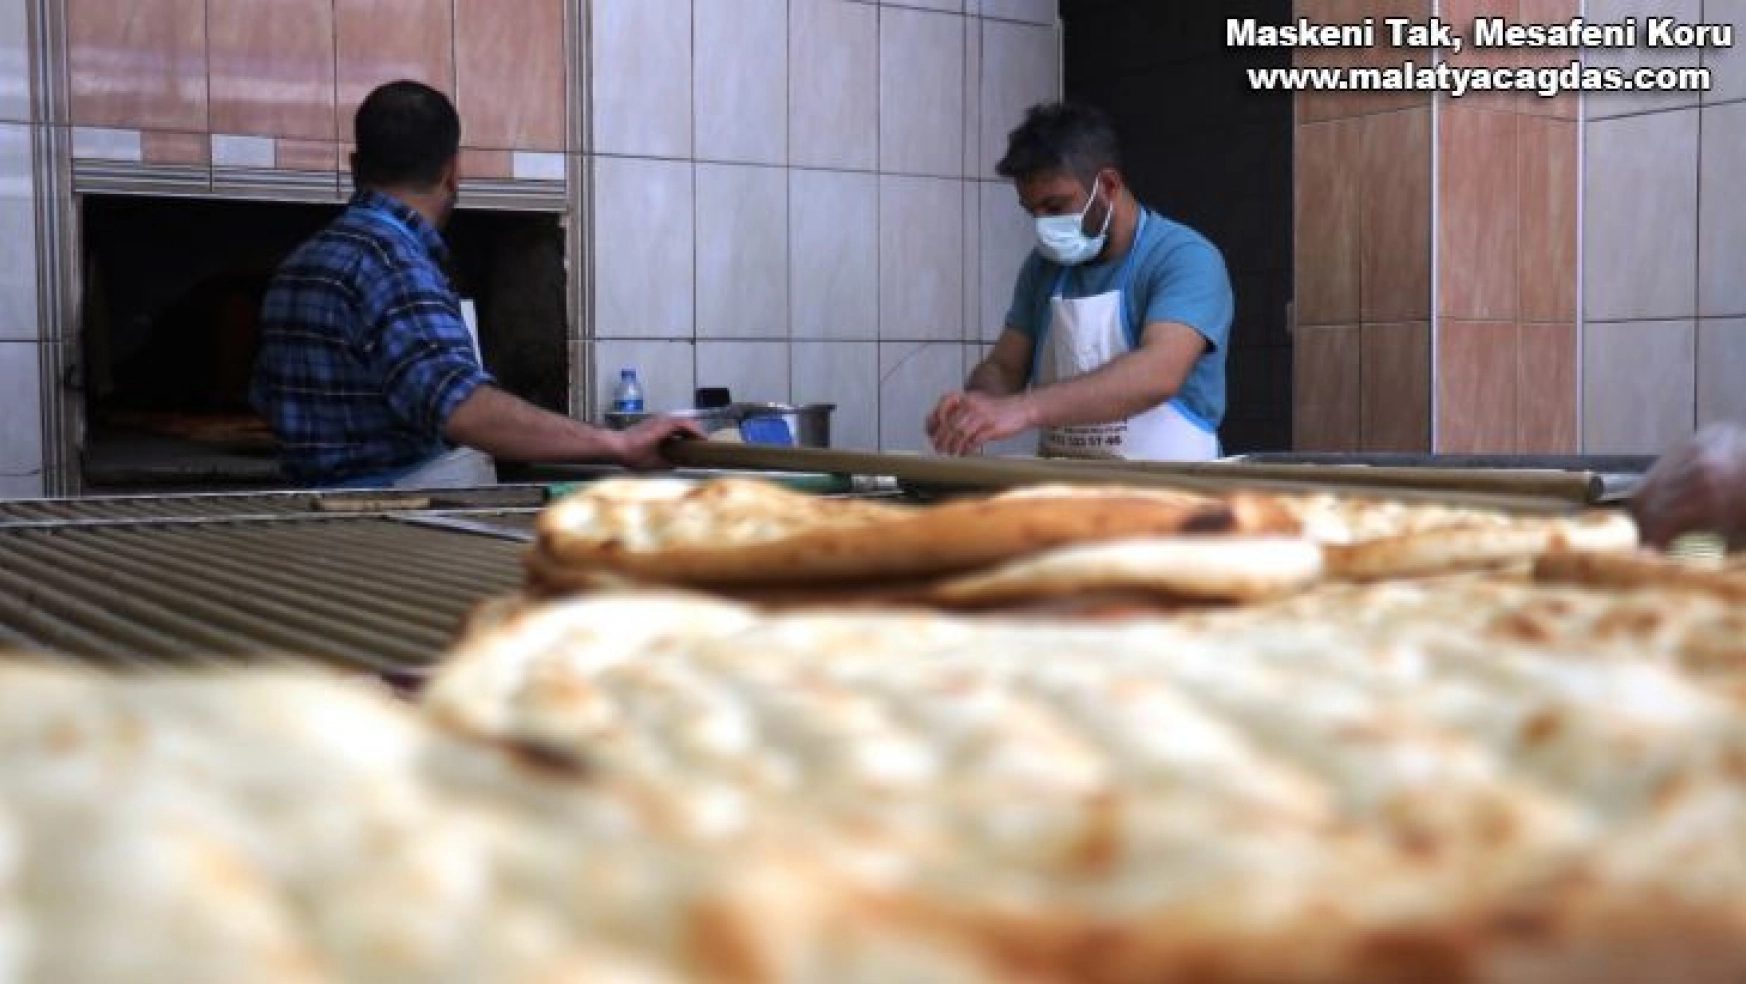 Malatya'da Ramazan öncesi pideye zam olmayacak